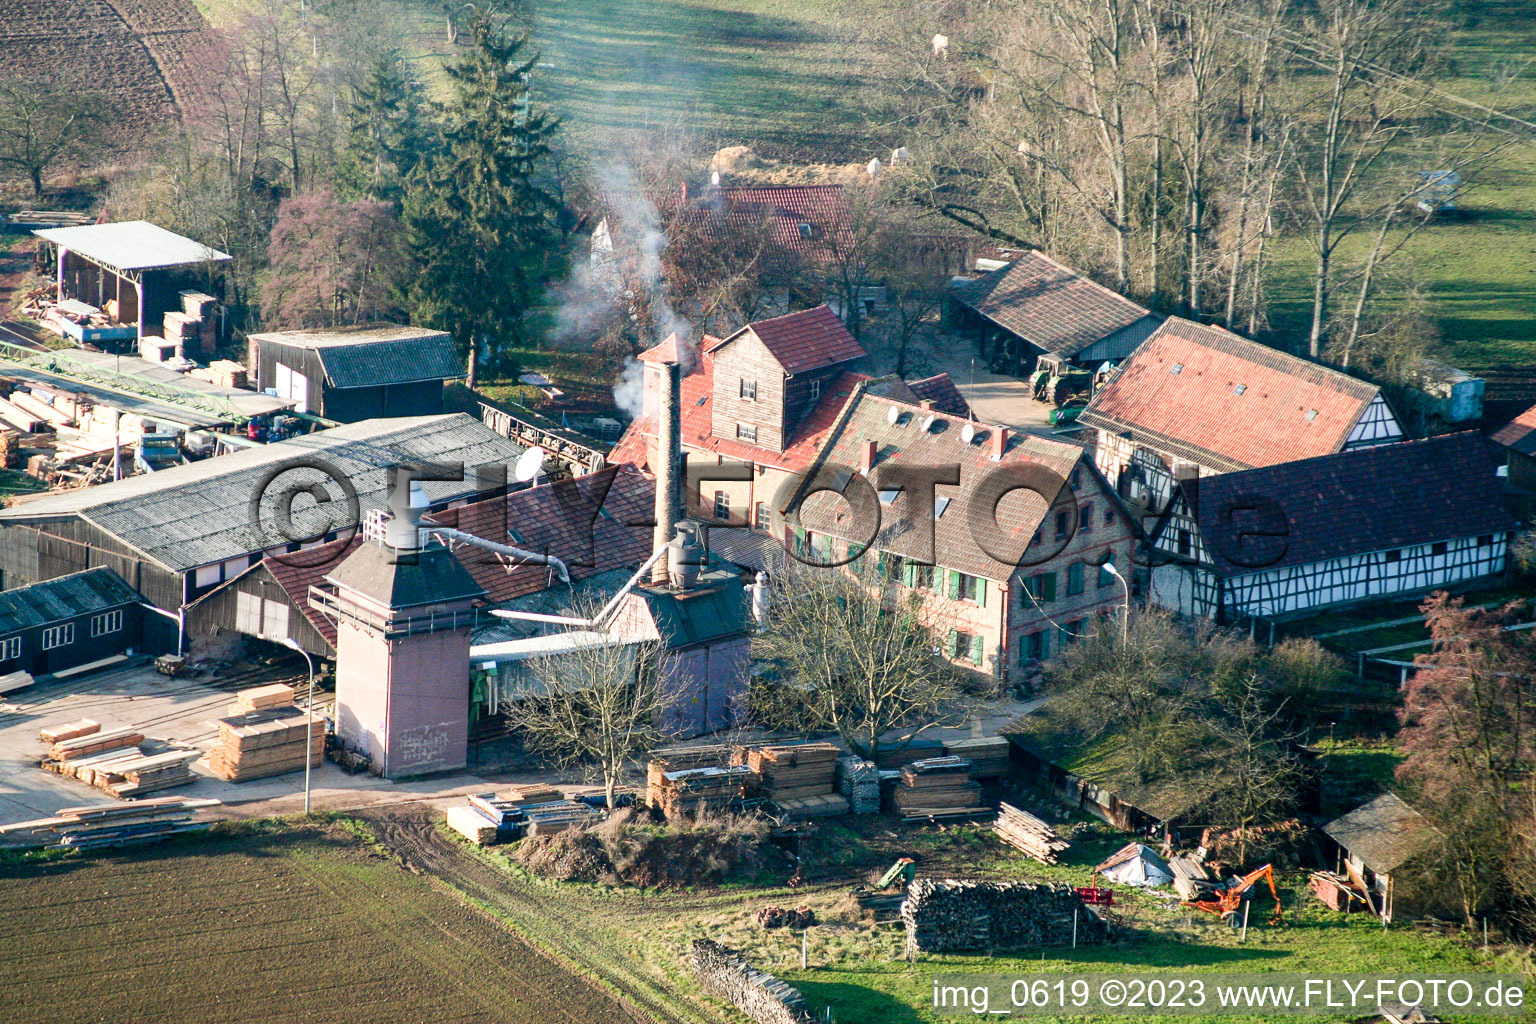 Schaidter mill in the district Schaidt in Wörth am Rhein in the state Rhineland-Palatinate, Germany